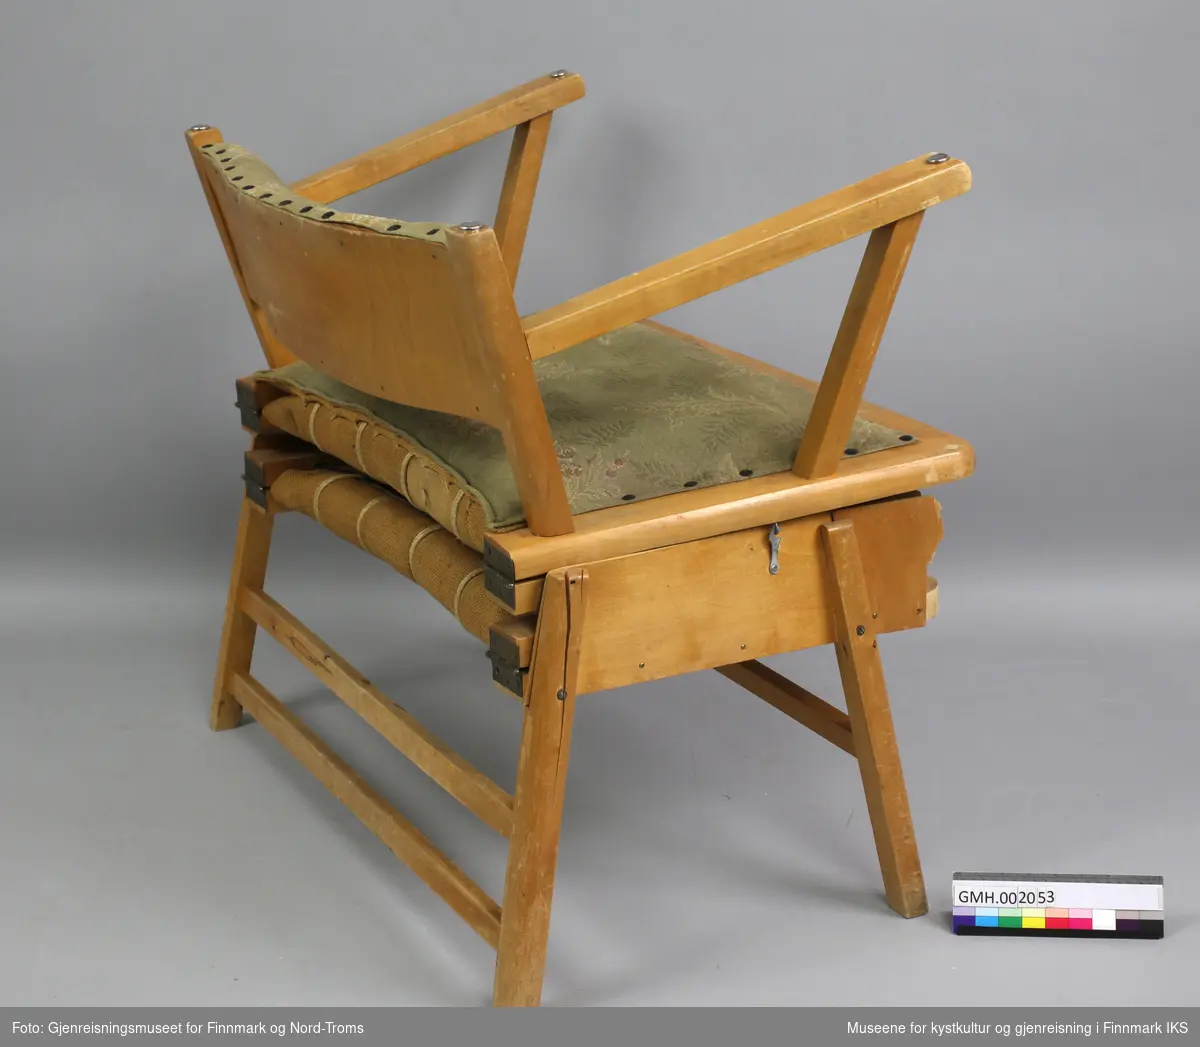 Stolsengen er en kombinasjon av stol og ekstraseng. Er møbelet i sammenfoldet tilstand, fremstår det som et litt bredere stol med lav rygg. Setet og rygg er polstrete og trukket med et tettvevd, grønn stoff med et rute- og blomstermønster med beige, gule og røde innslag.Trekkene til setet og ryggen er naglet fast. Setet settes fast på møbelkroppen med hjelp av to kroker på begge sidene.
For å slå møbelet ut, løsner man krokene og vipper sitteflaten fremover slik at oversidene av armlenene og ryggen blir til ben. Så trekker man denne delen lenger frem, slik at de to elementer i midten slår seg ut. I utklaffet tilstand består møbelet av en ramme på fem par ben. De enkelte deler av ramma er hengslet til hverandre. I ramma er det festet flate fjær på tvers som er forbundet med hyssing på langs. Oppå fjærene er det et lag striestoff, derpå filt som fyllmateriale og øverst er det et tettvevd, blått og hvitt stripet trekkstoff. Hodeenden er omkranset av en bøyd finérplate som også skjuler sengefunksjonen i sammenfoldet tilstand. Siden hele midtpartiet av kryssfinérplaten mangler, er deler av madrassen synlige.